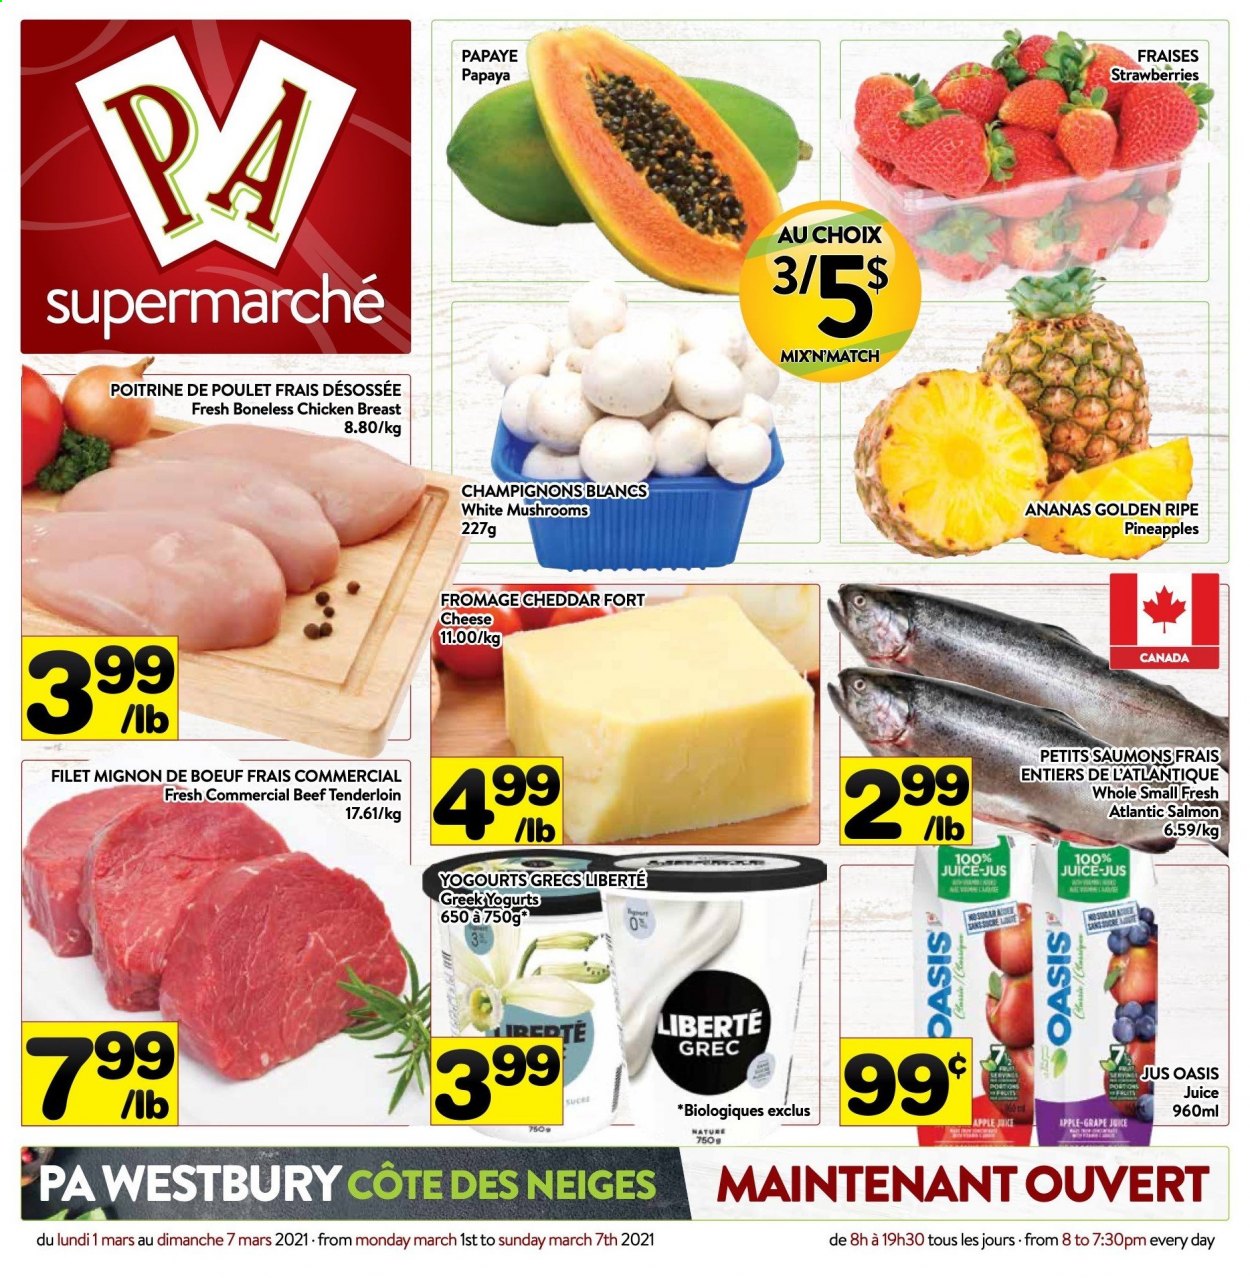 thumbnail - Circulaire PA Supermarché - 01 Mars 2021 - 07 Mars 2021 - Produits soldés - ananas, fraises, fromage, Oasis, jus, filet mignon, sucre. Page 1.